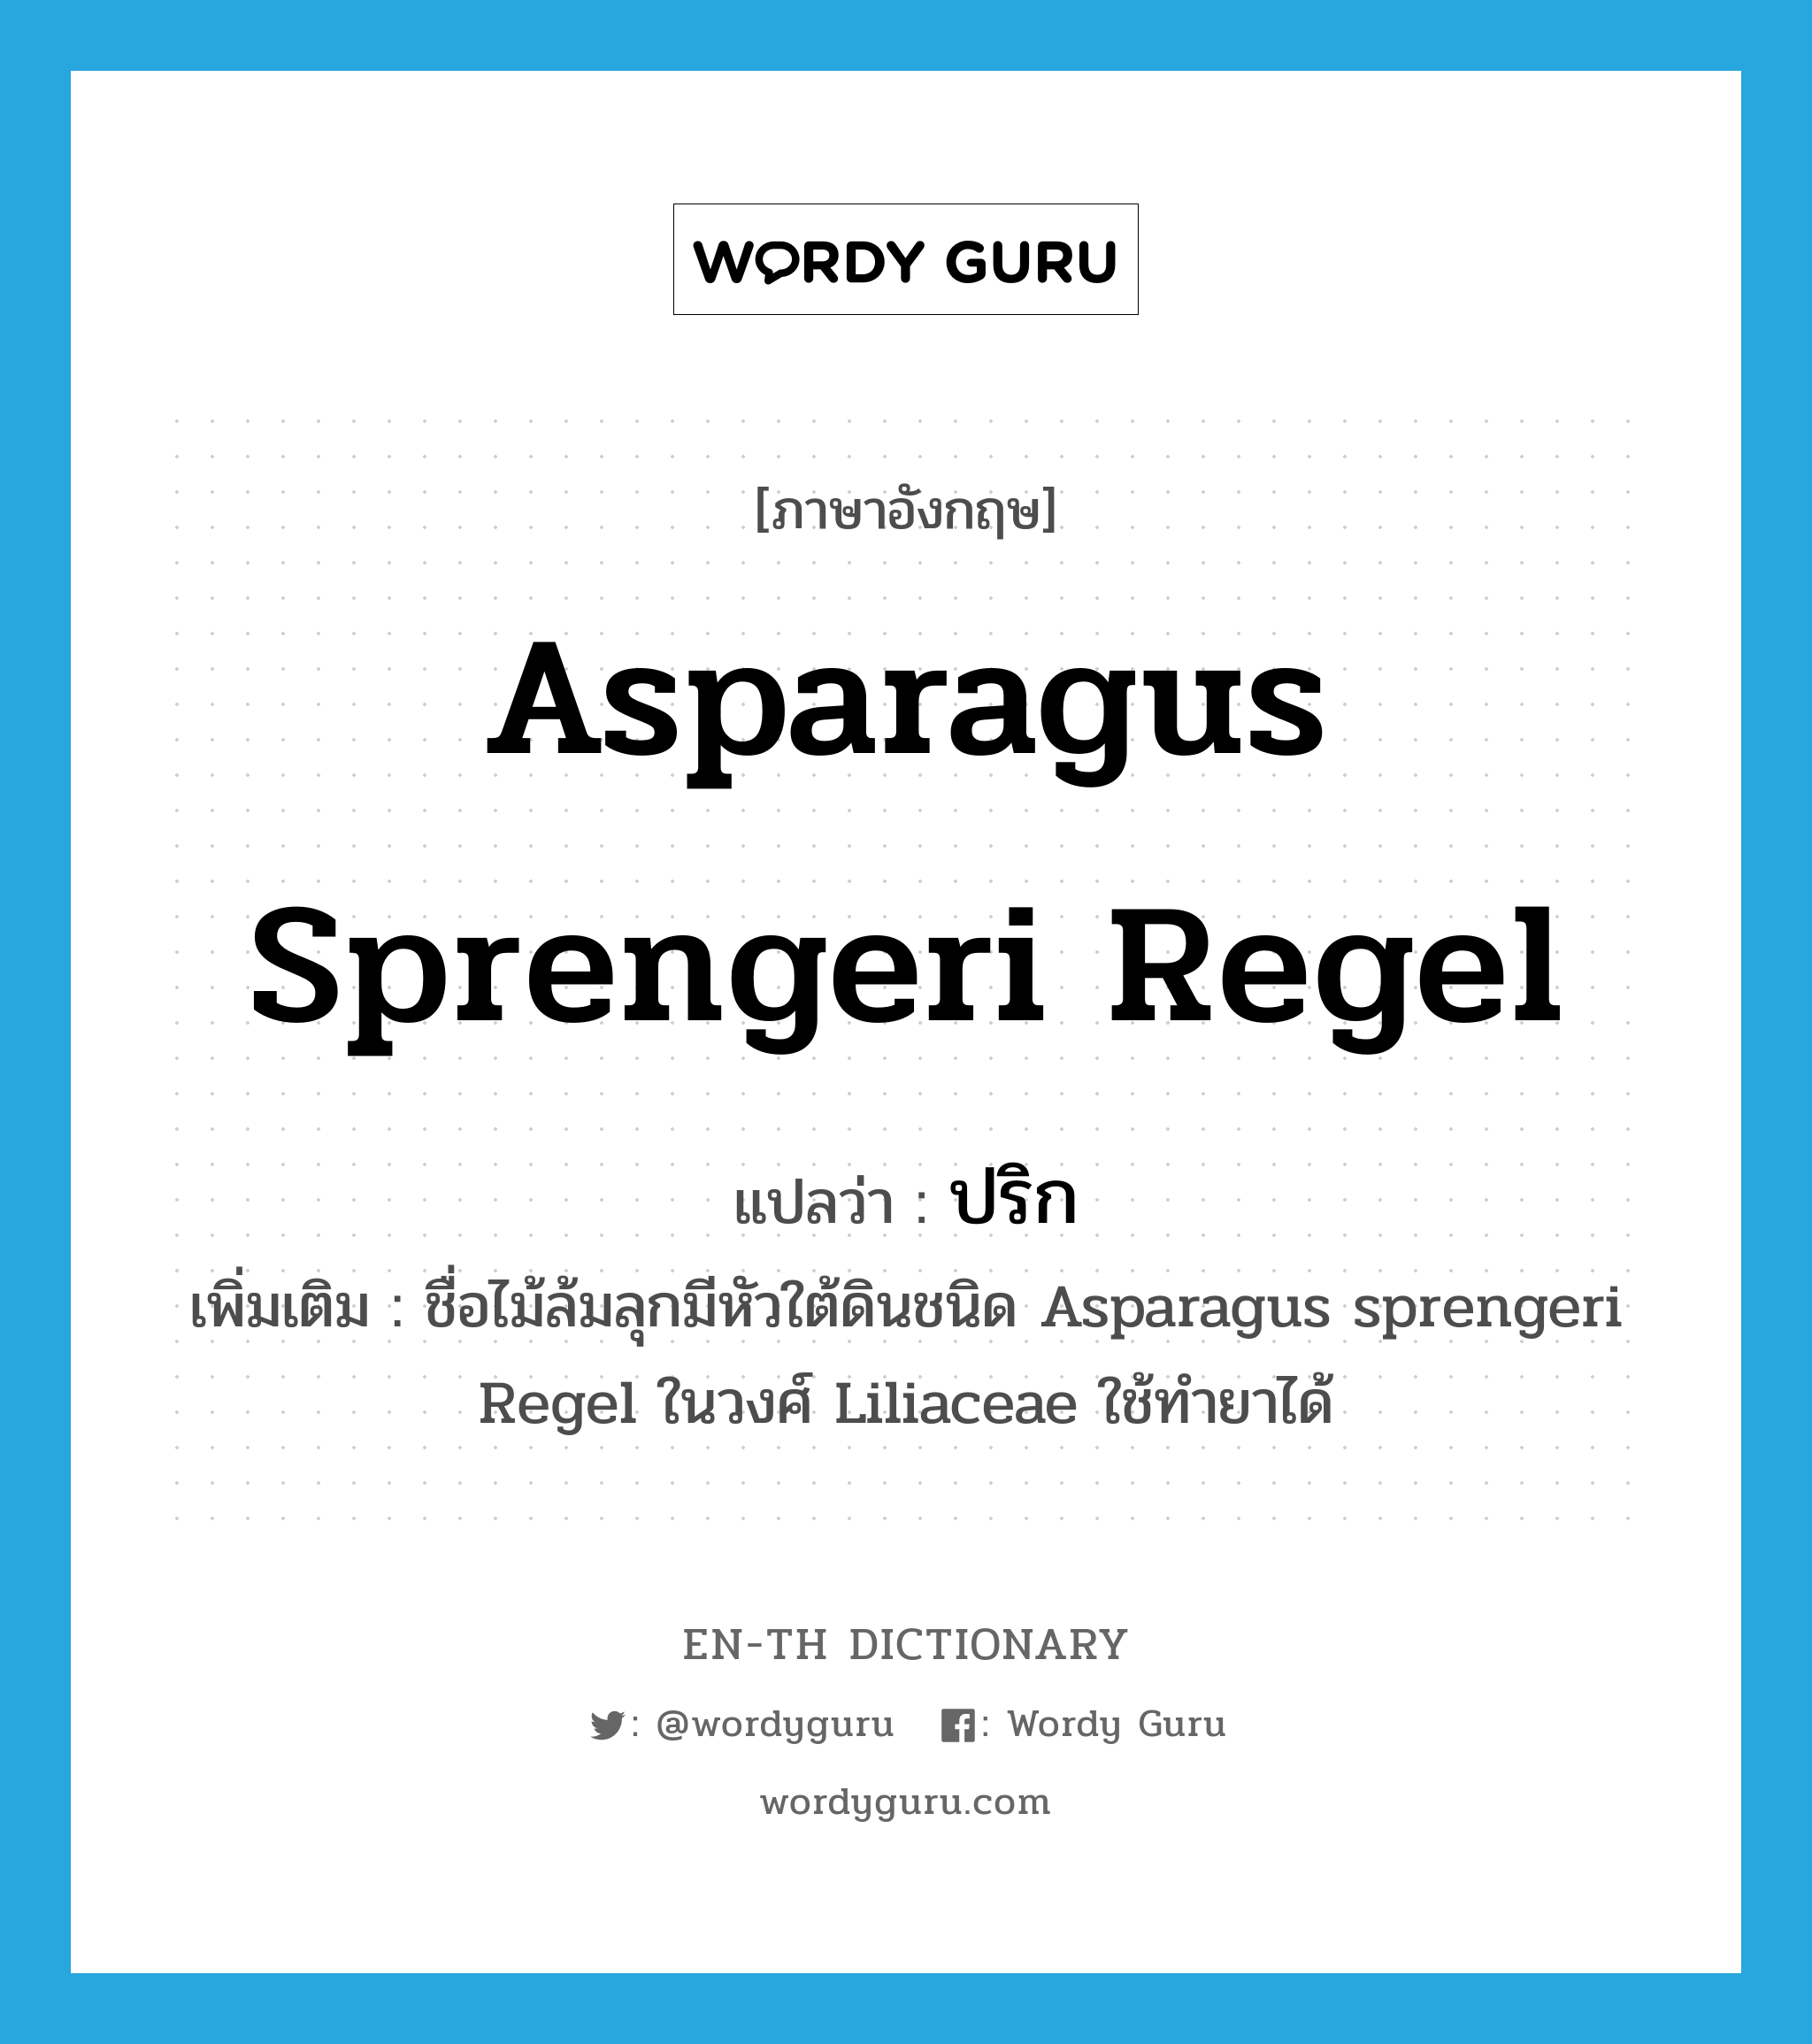 Asparagus sprengeri Regel แปลว่า?, คำศัพท์ภาษาอังกฤษ Asparagus sprengeri Regel แปลว่า ปริก ประเภท N เพิ่มเติม ชื่อไม้ล้มลุกมีหัวใต้ดินชนิด Asparagus sprengeri Regel ในวงศ์ Liliaceae ใช้ทำยาได้ หมวด N